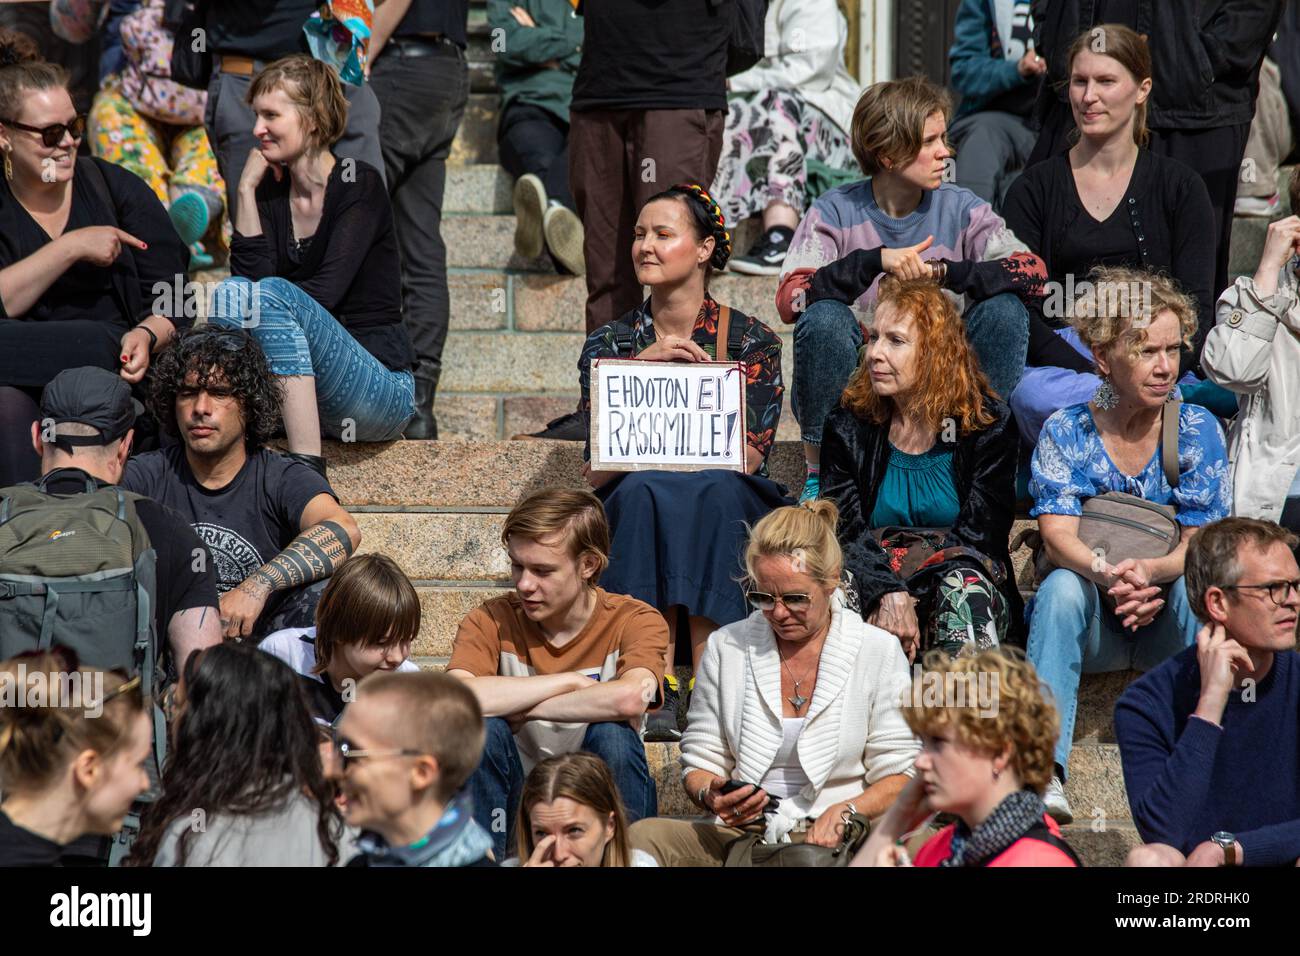 Ehdoton ei rasismille ! Femme tenant un signe fait à la main devant Nollatoleranssi! Manifestation contre le racisme à Helsinki, Finlande. Banque D'Images